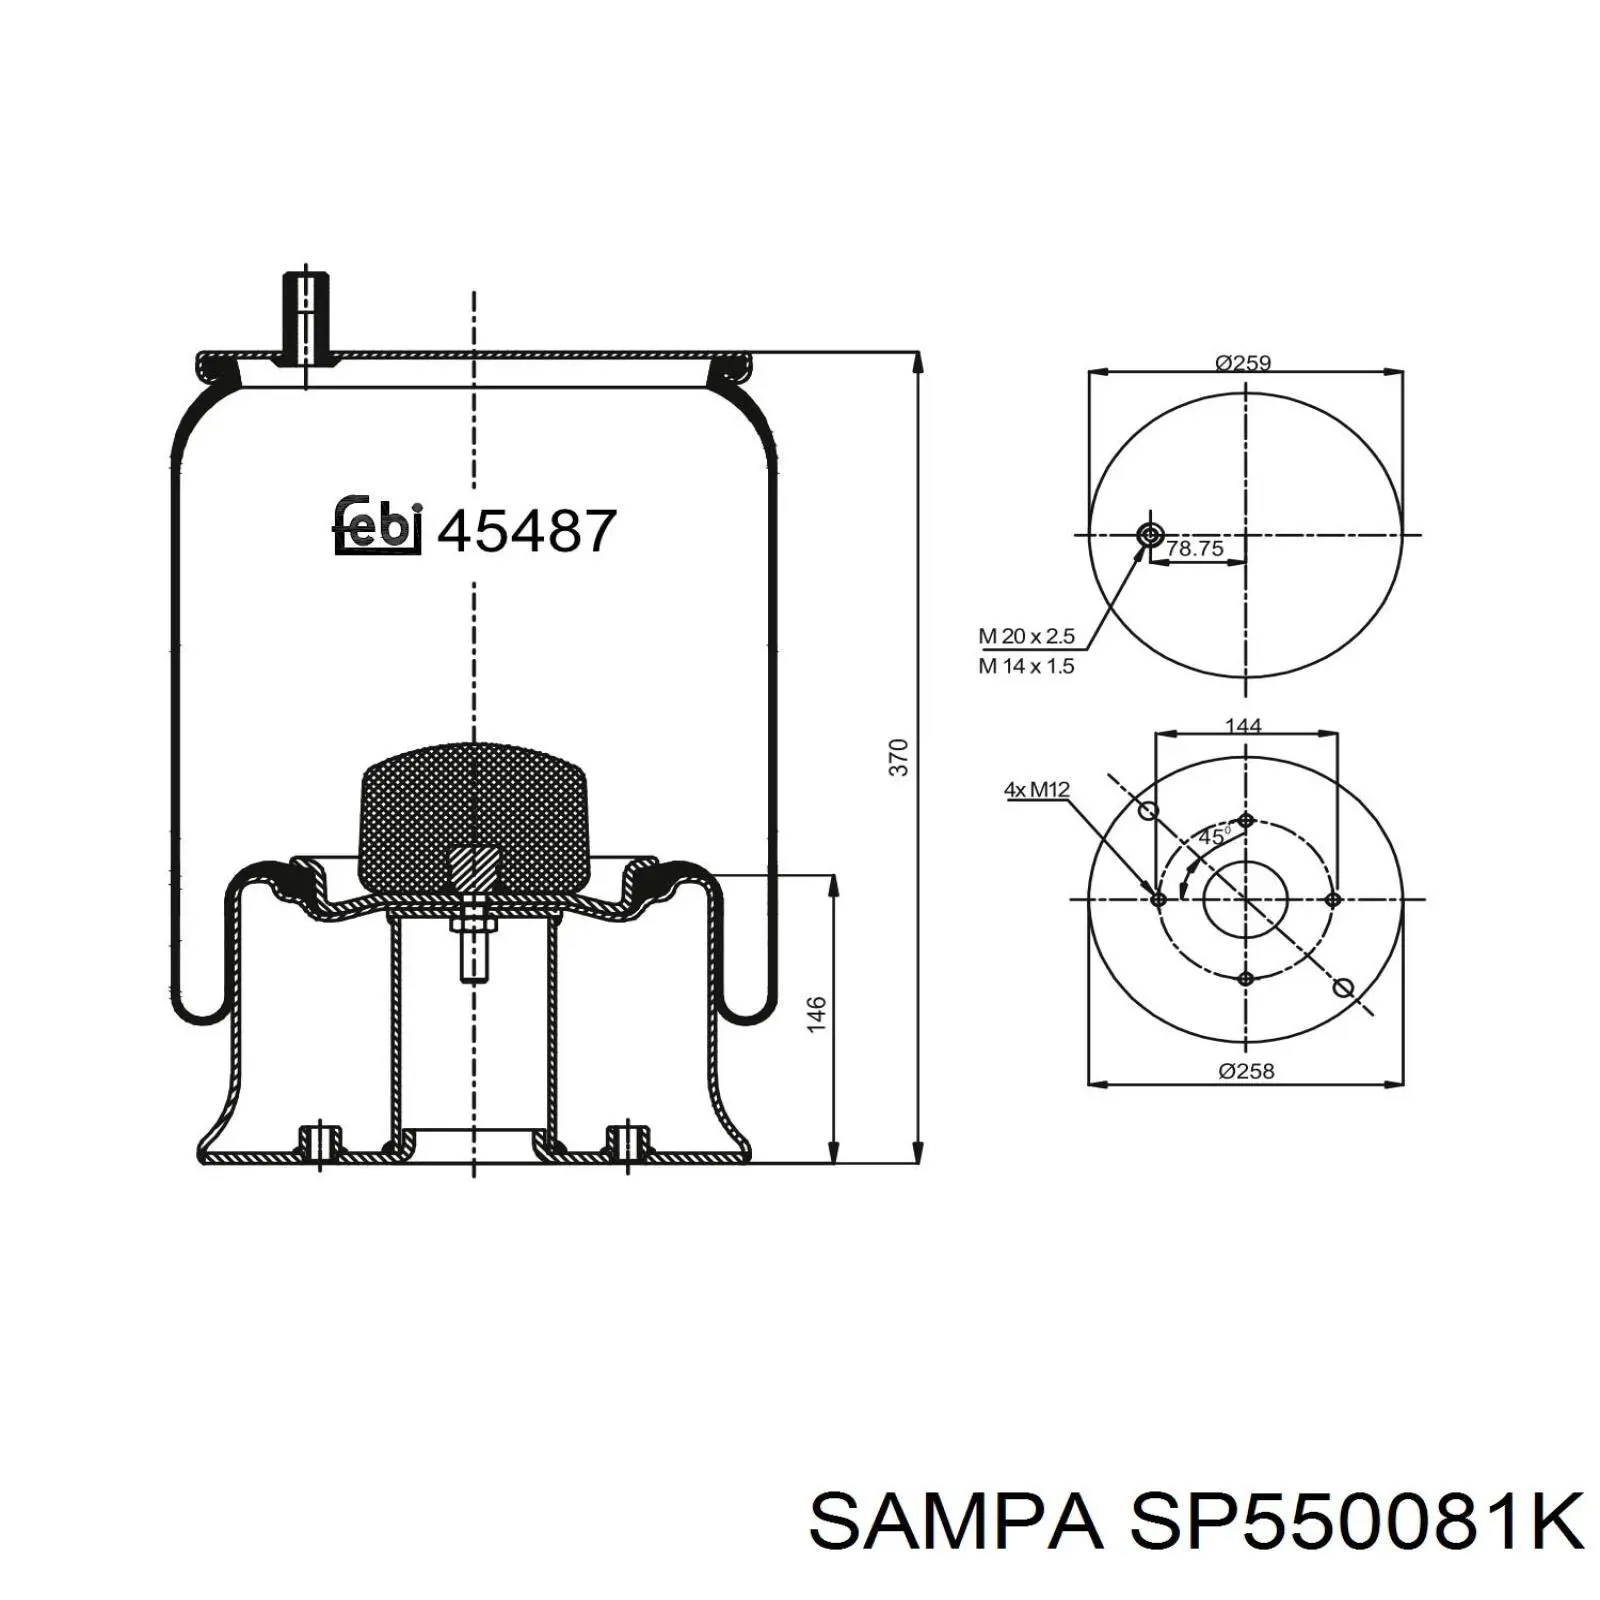 SP550081K Sampa Otomotiv‏ muelle neumático, suspensión, eje trasero